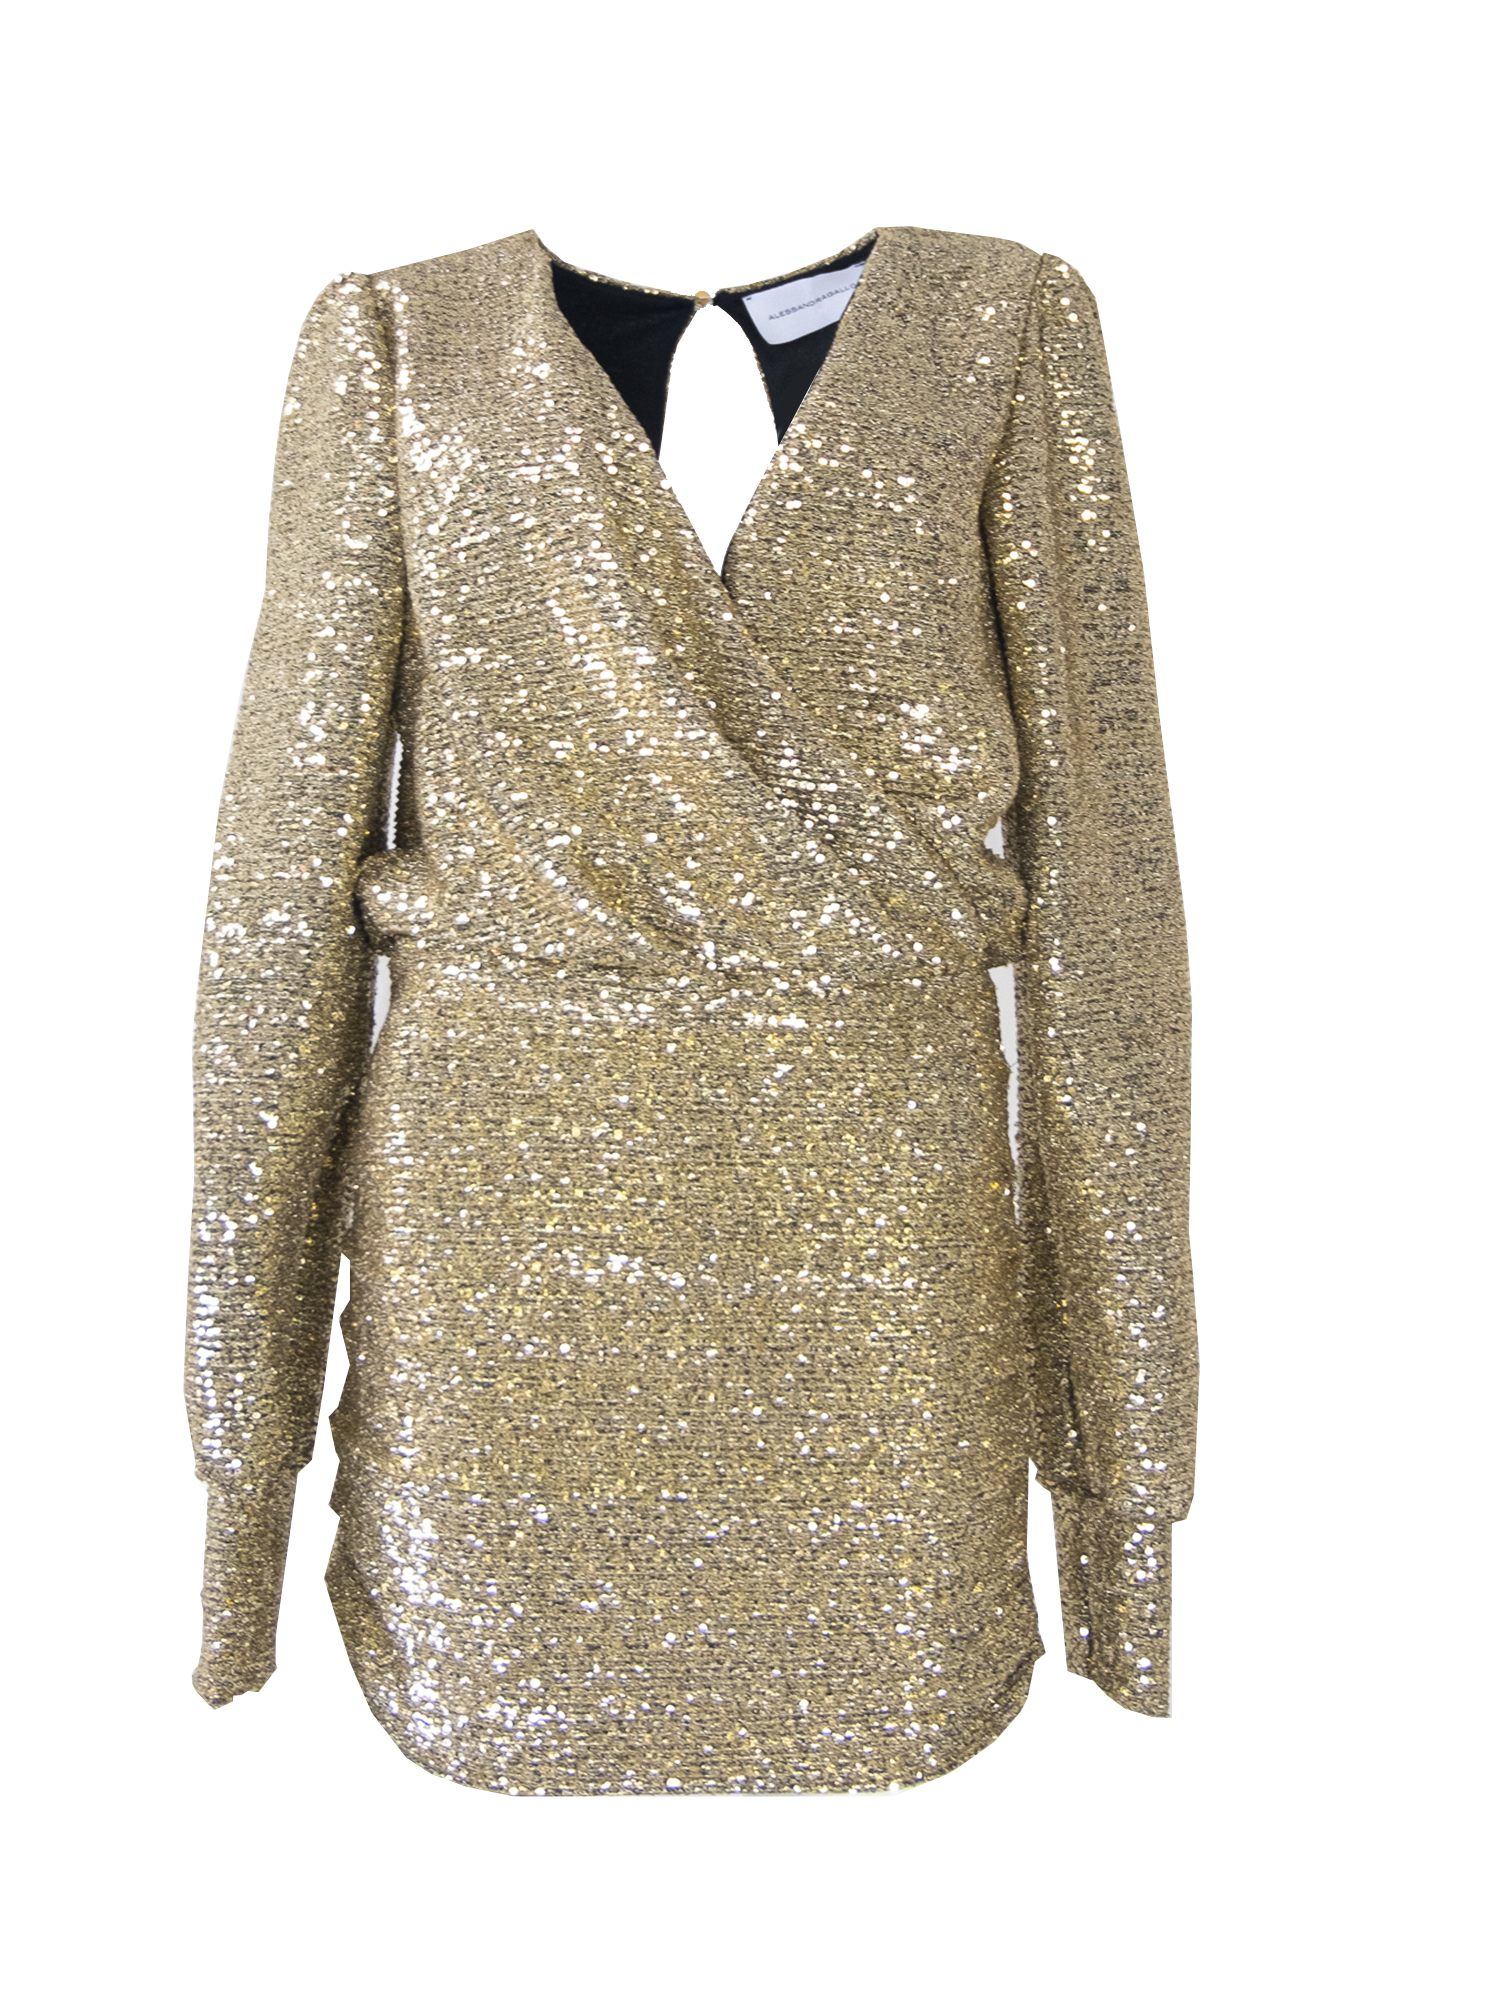 ZOE - short dress in gold sequin